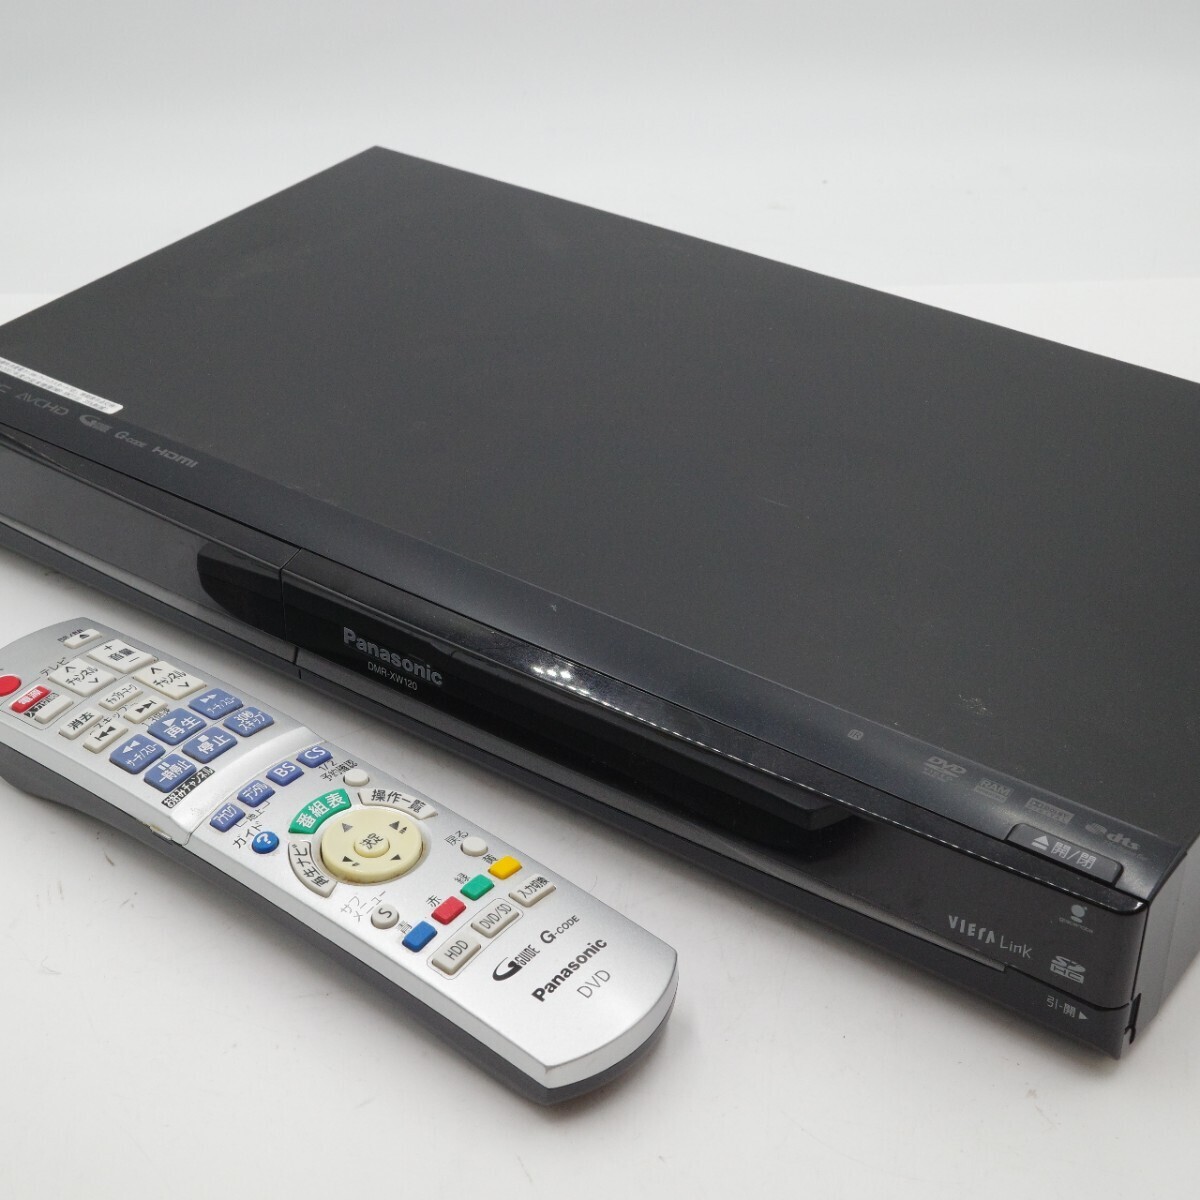 Panasonic Panasonic VIERA viera DVD магнитофон DMR-XW120 черный 2008 год производства корпус только текущее состояние товар 